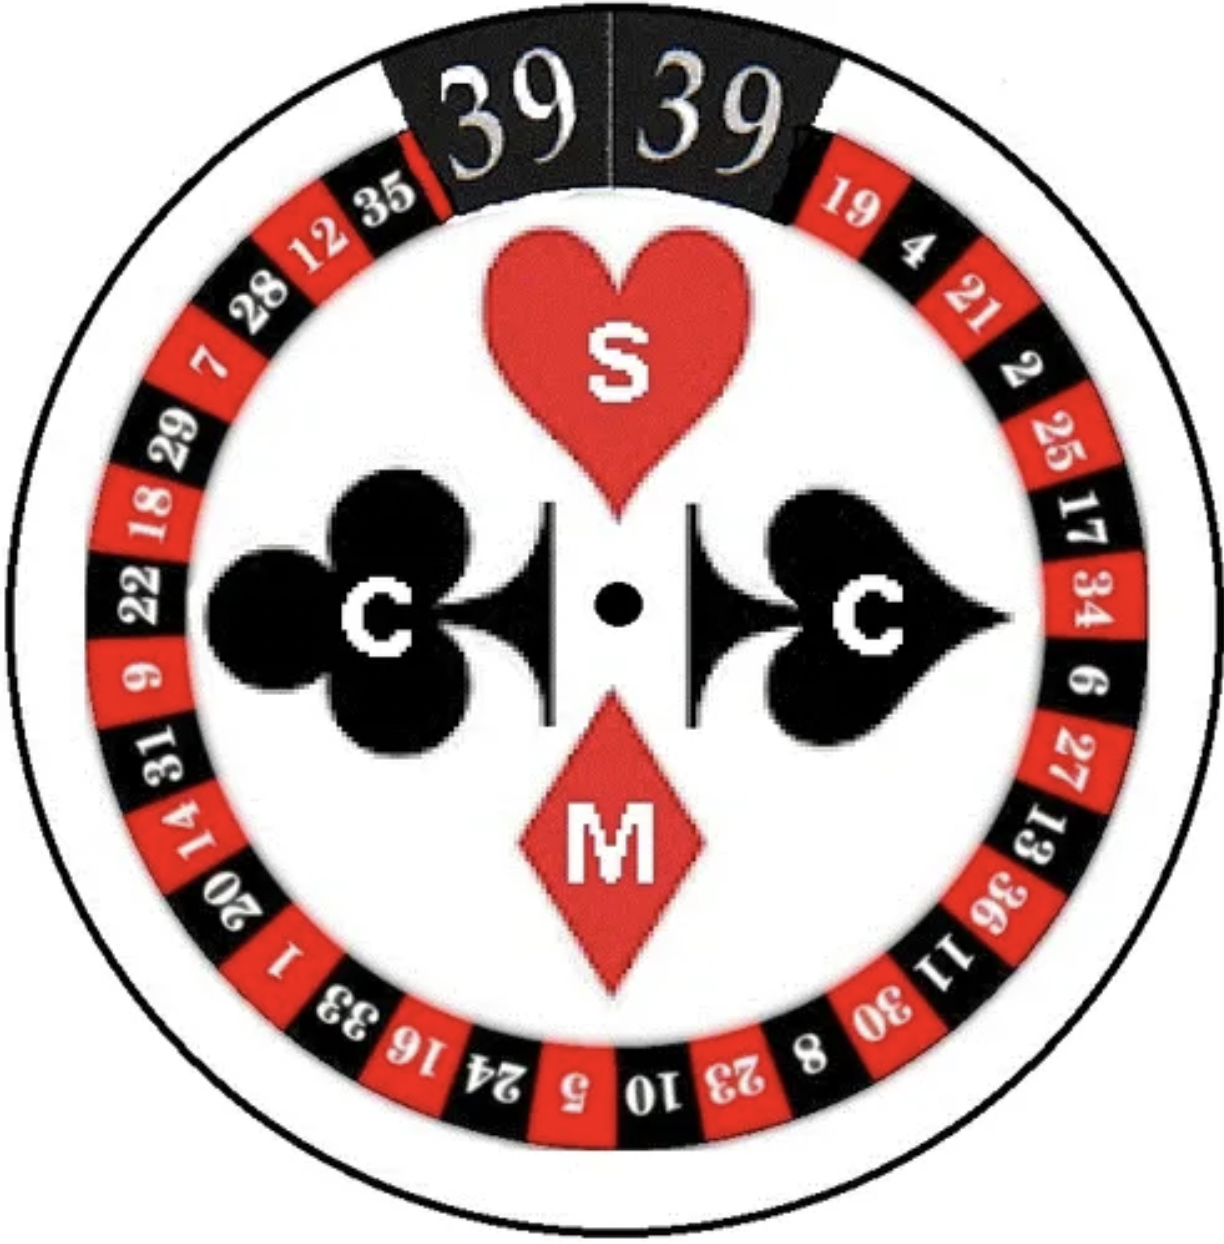 Syndicat des Croupiers et Croupières du Casino de Montréal 3939 logo